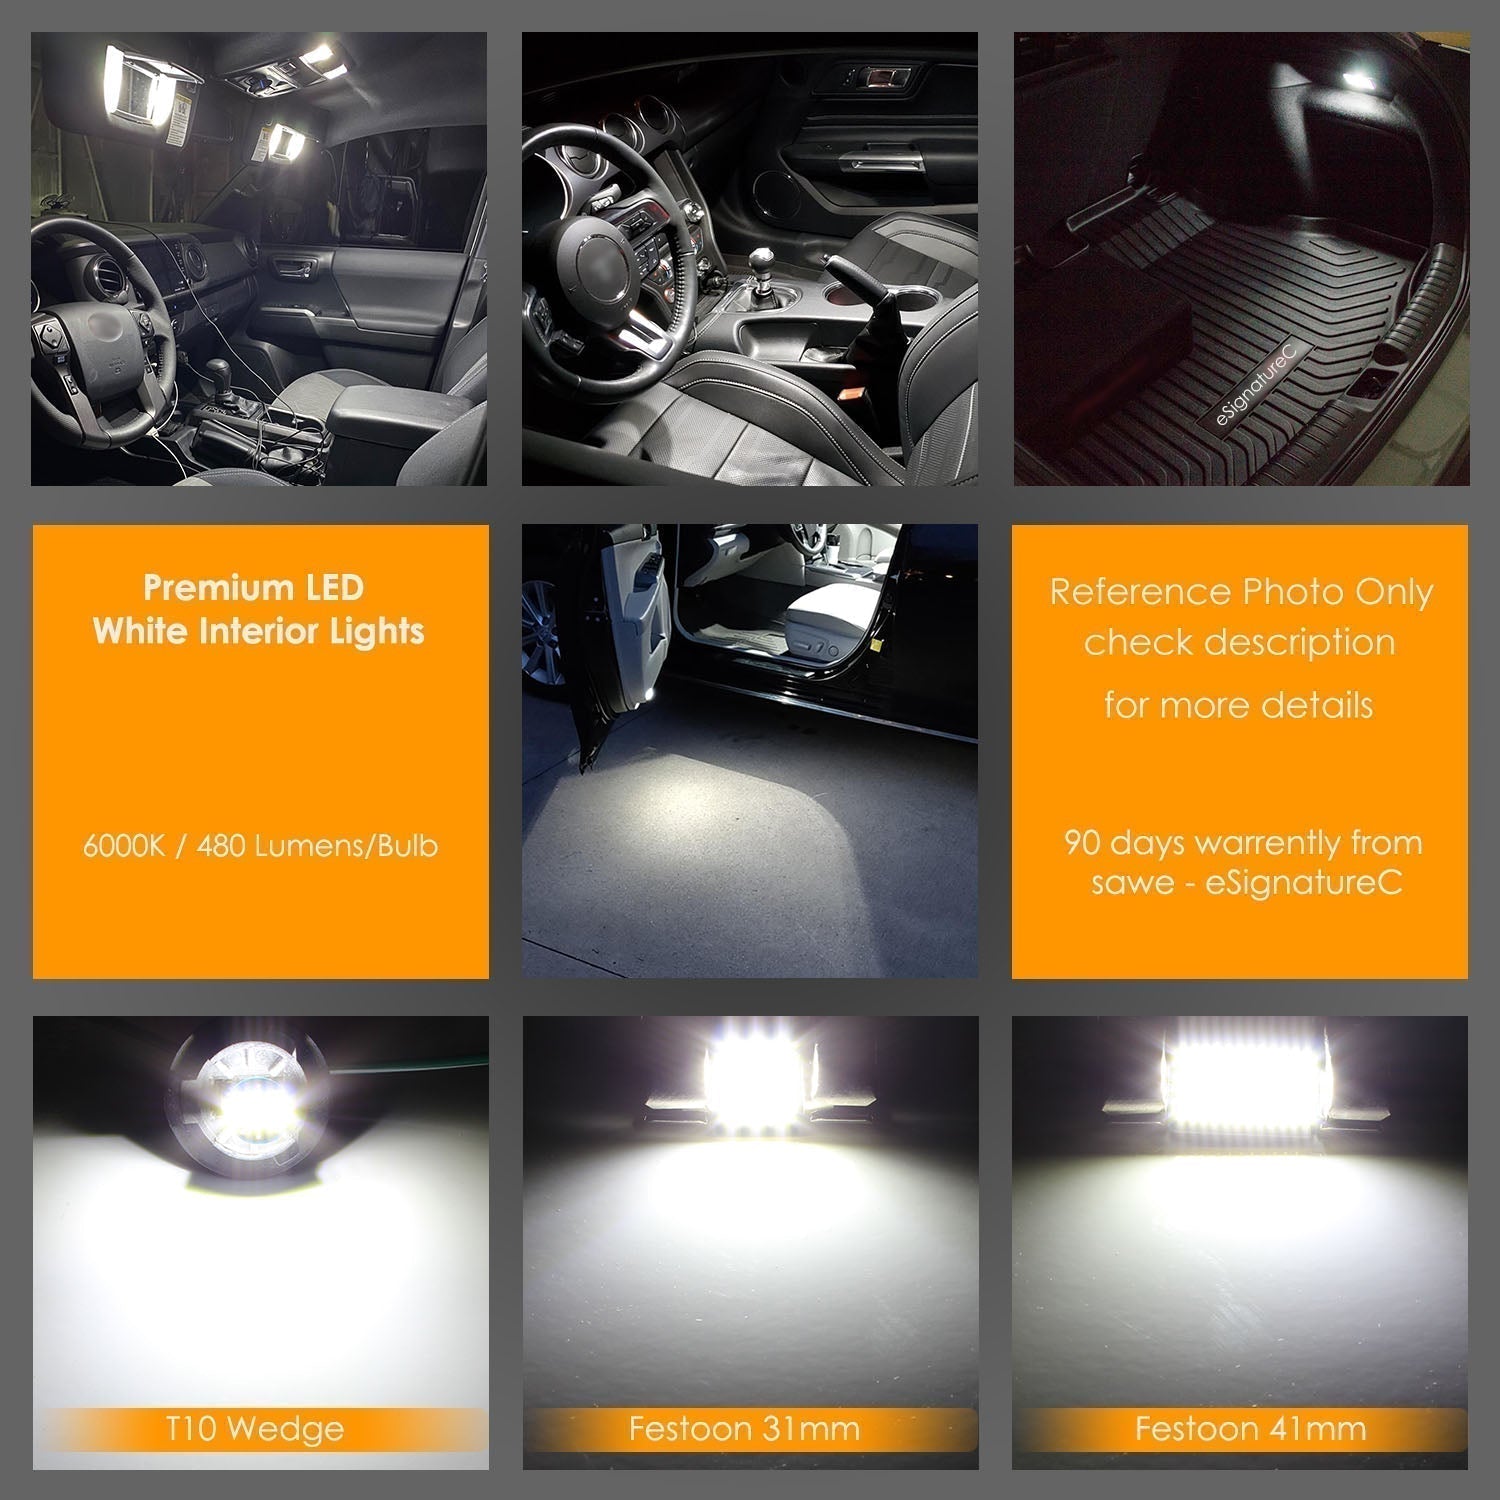 For Audi Q7 Interior LED Lights - Dome & Map Light Bulb Package Kit for 2007 - 2015 - White